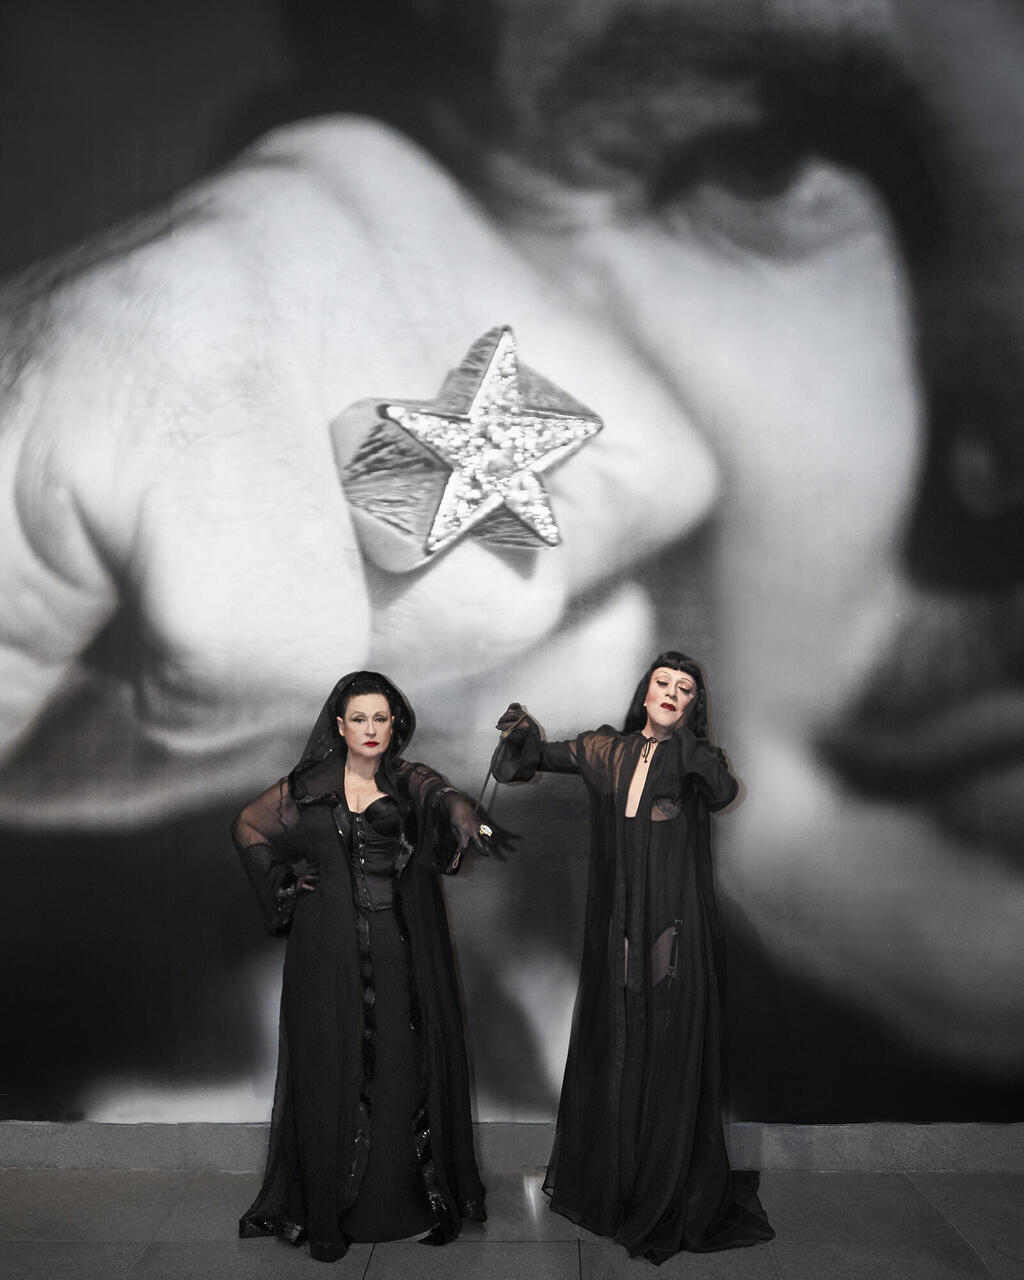 סטלה עמר אליס וג'ואי אריאס בתערוכה של מוגלר במוזיאון ברוקלין